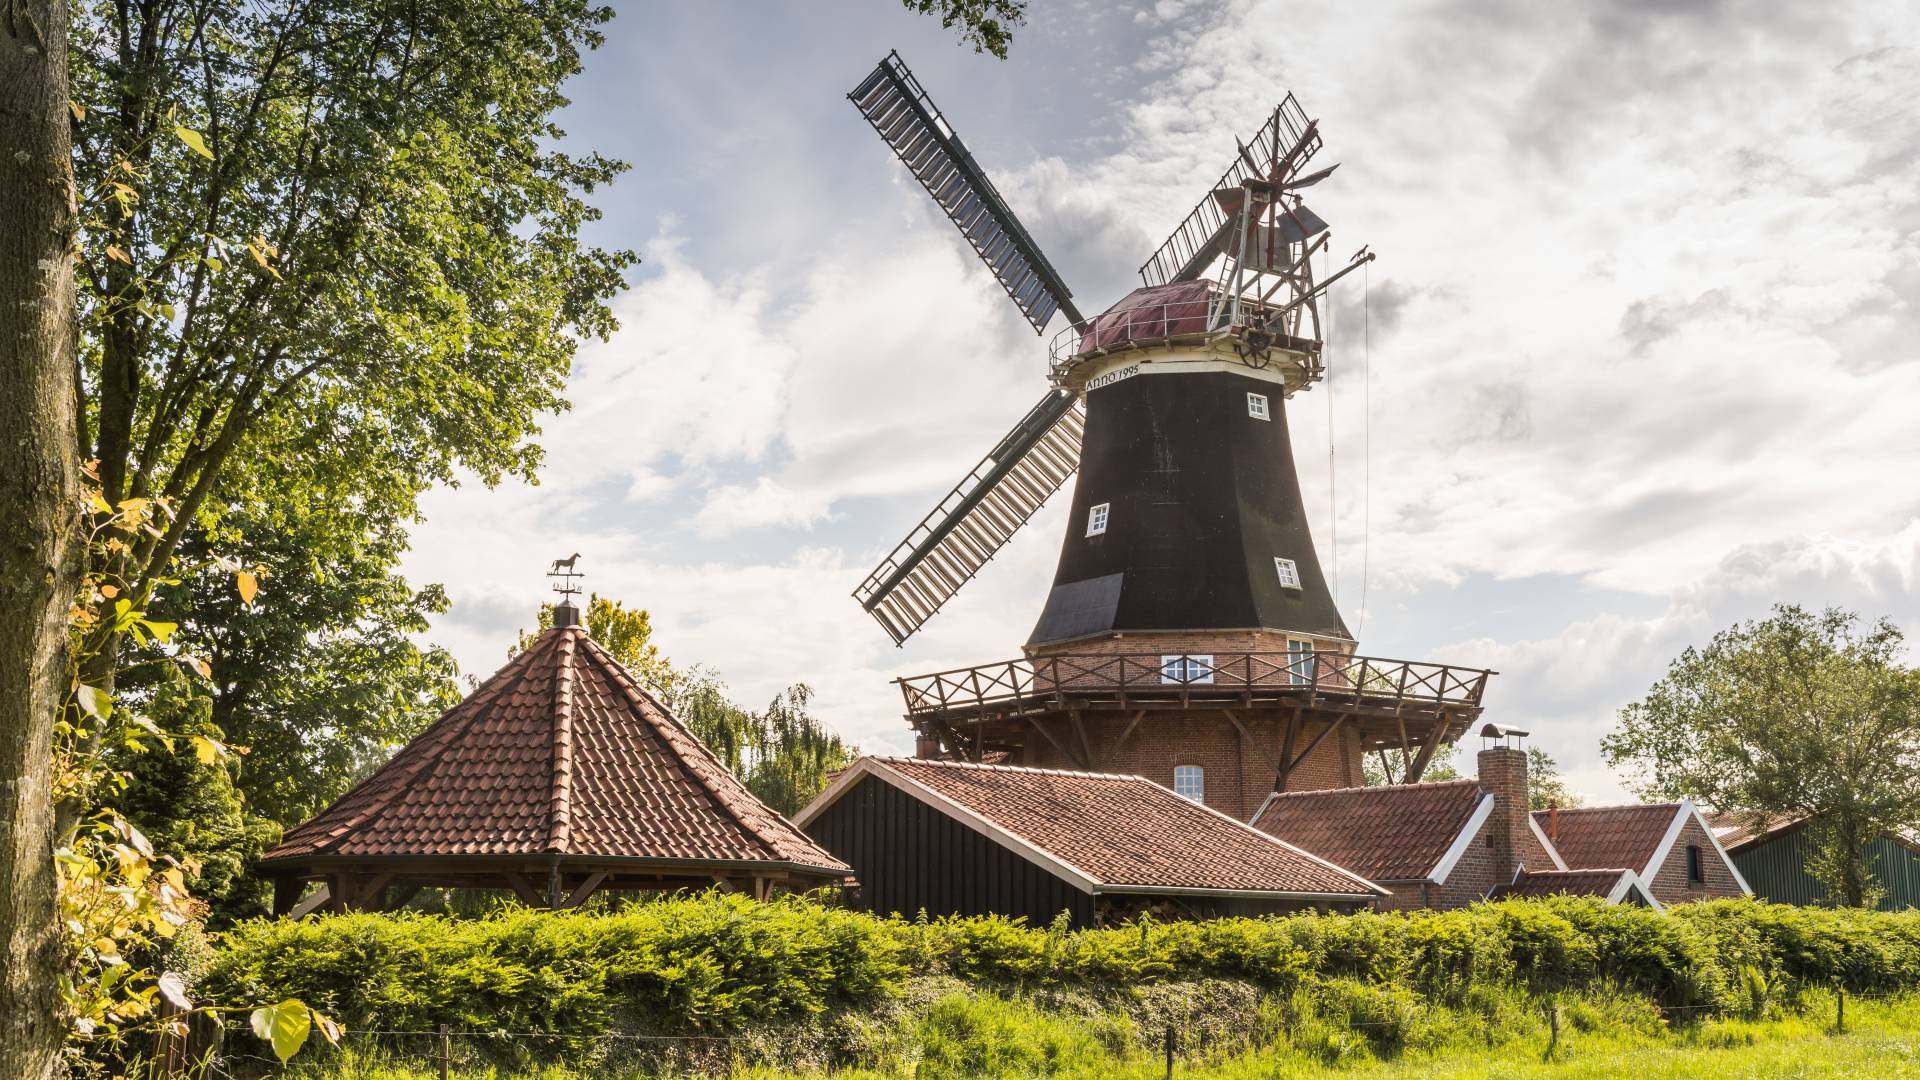 Windmühle Rhaude in grüner Natur an der Niedersächsischen Mühlenstraße im Landkreis Leer, Ostfriesland, Niedersachsen, Deutschland